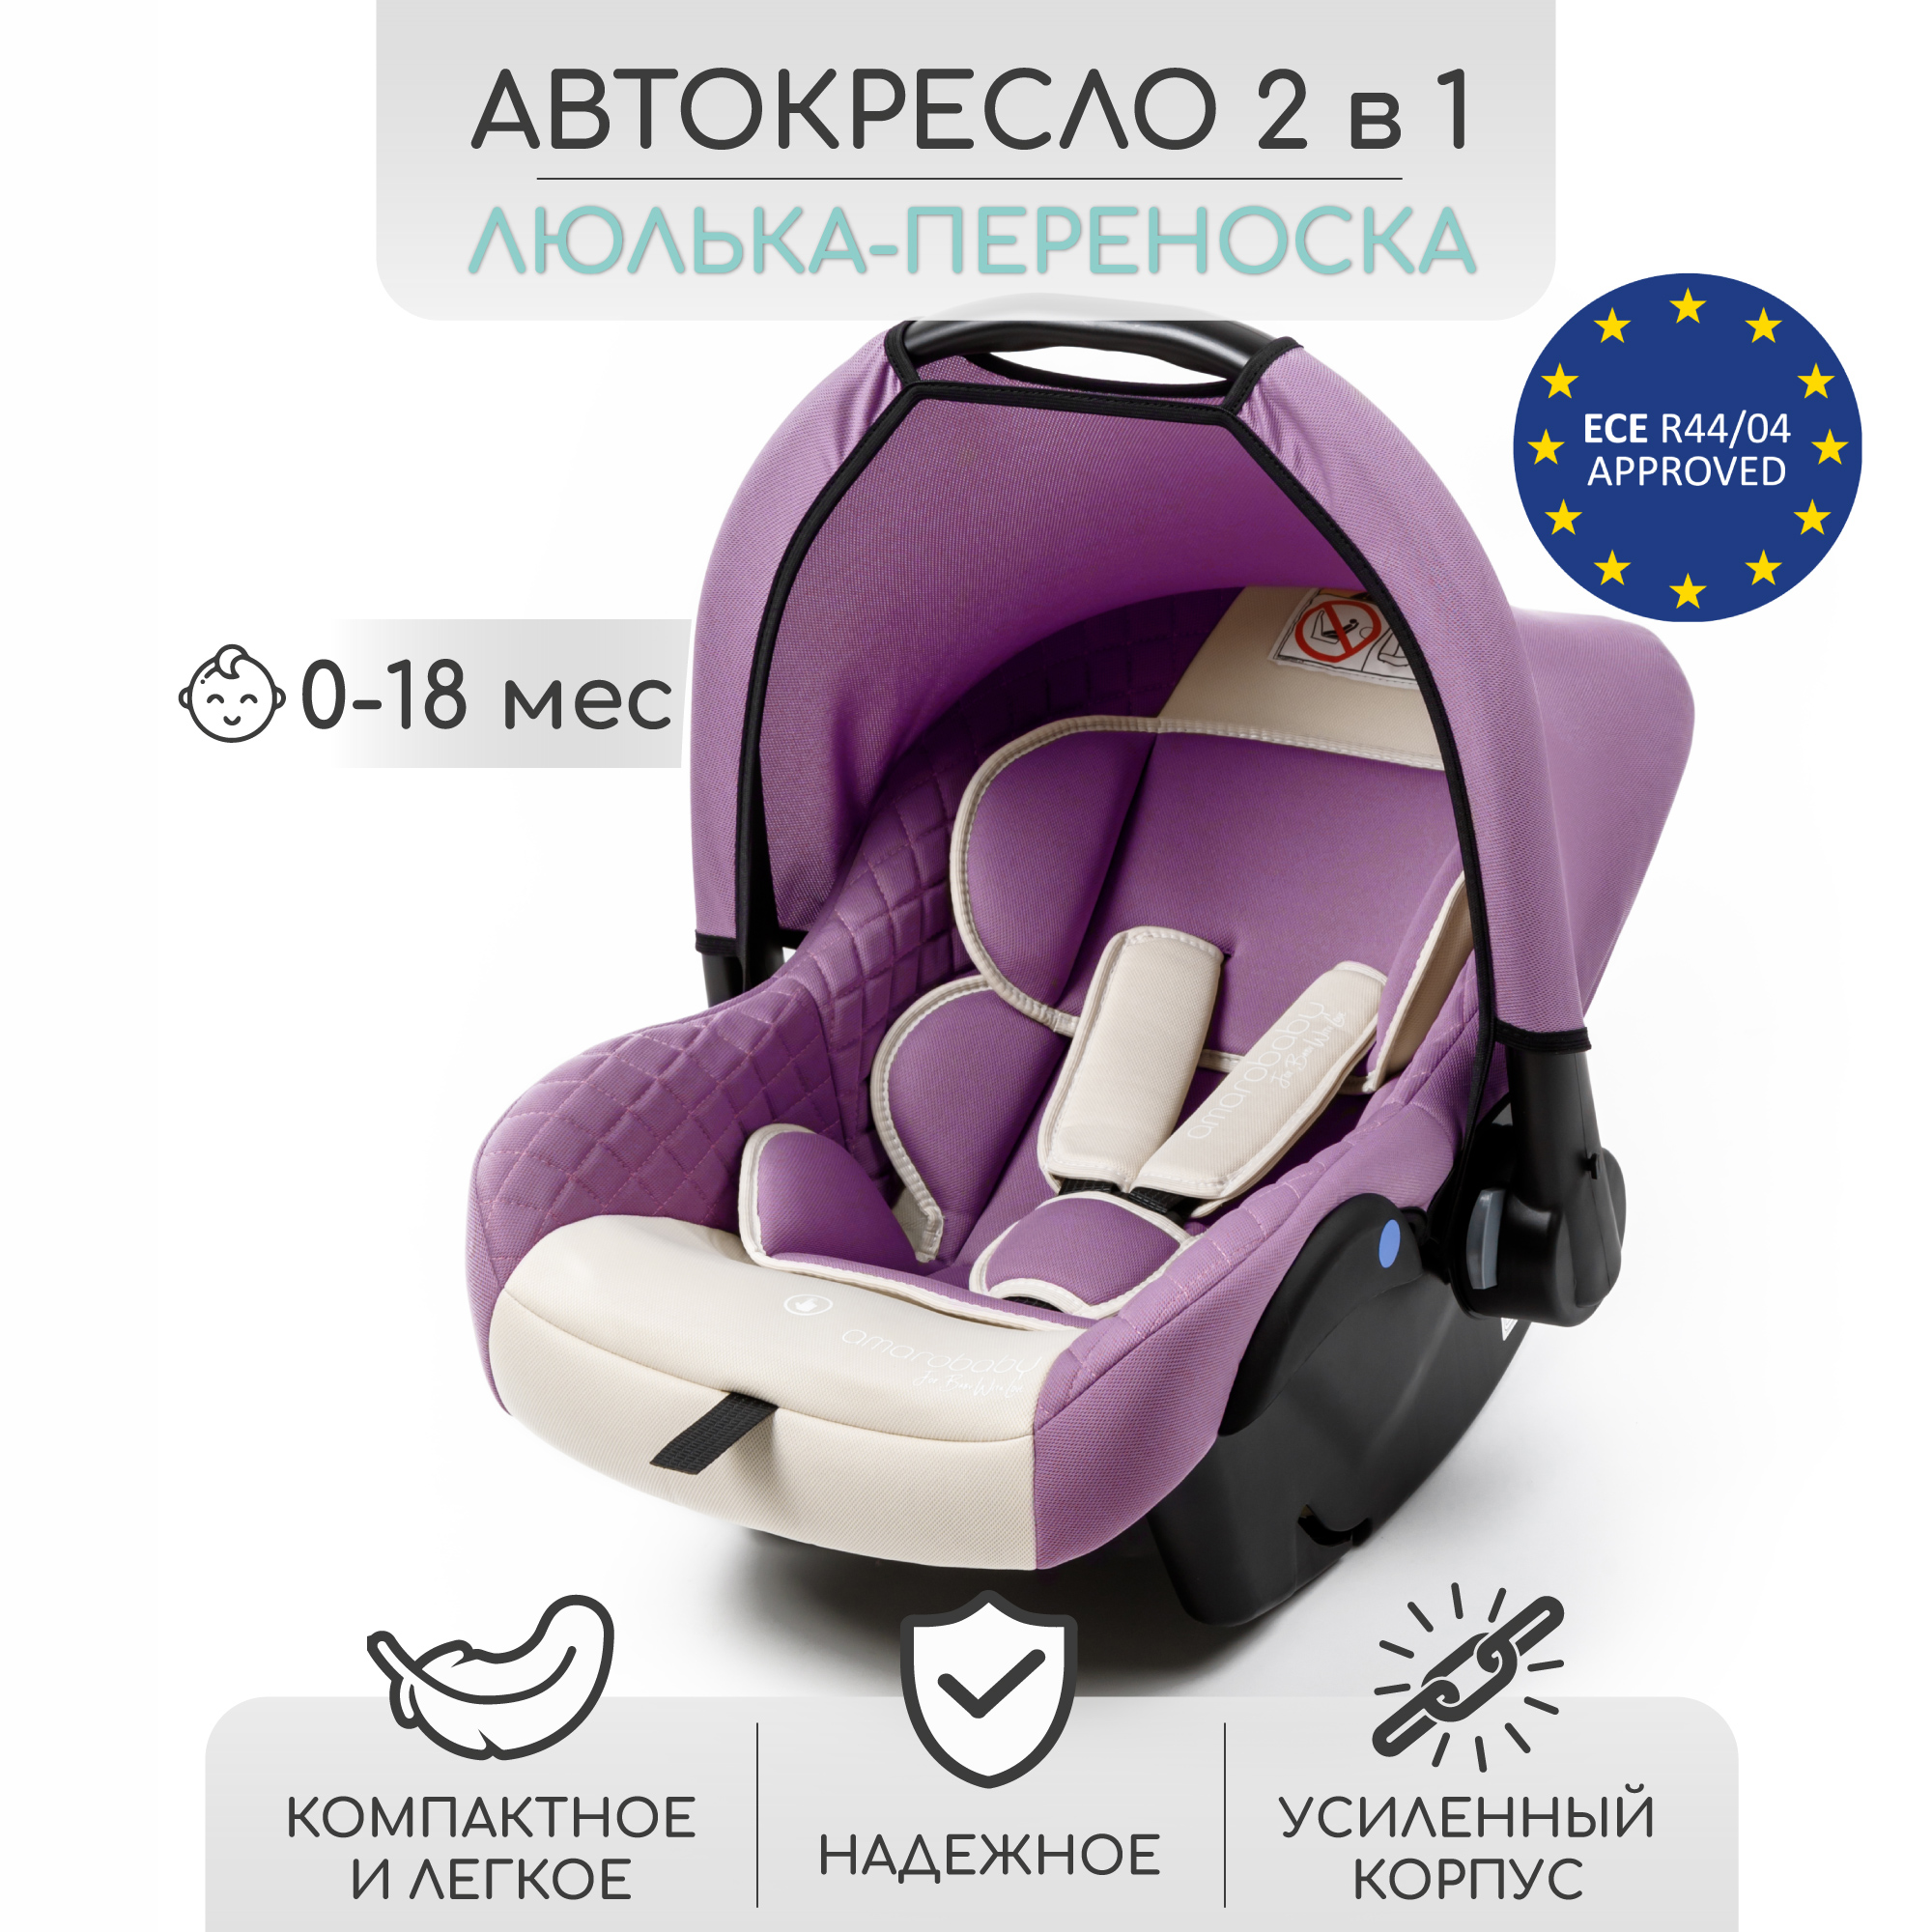 Автокресло детское Amarobaby Baby comfort, группа 0+, светло-фиолетовый/светло-бежевый slider comfort neon ss2c2n год 2022 фиолетовый